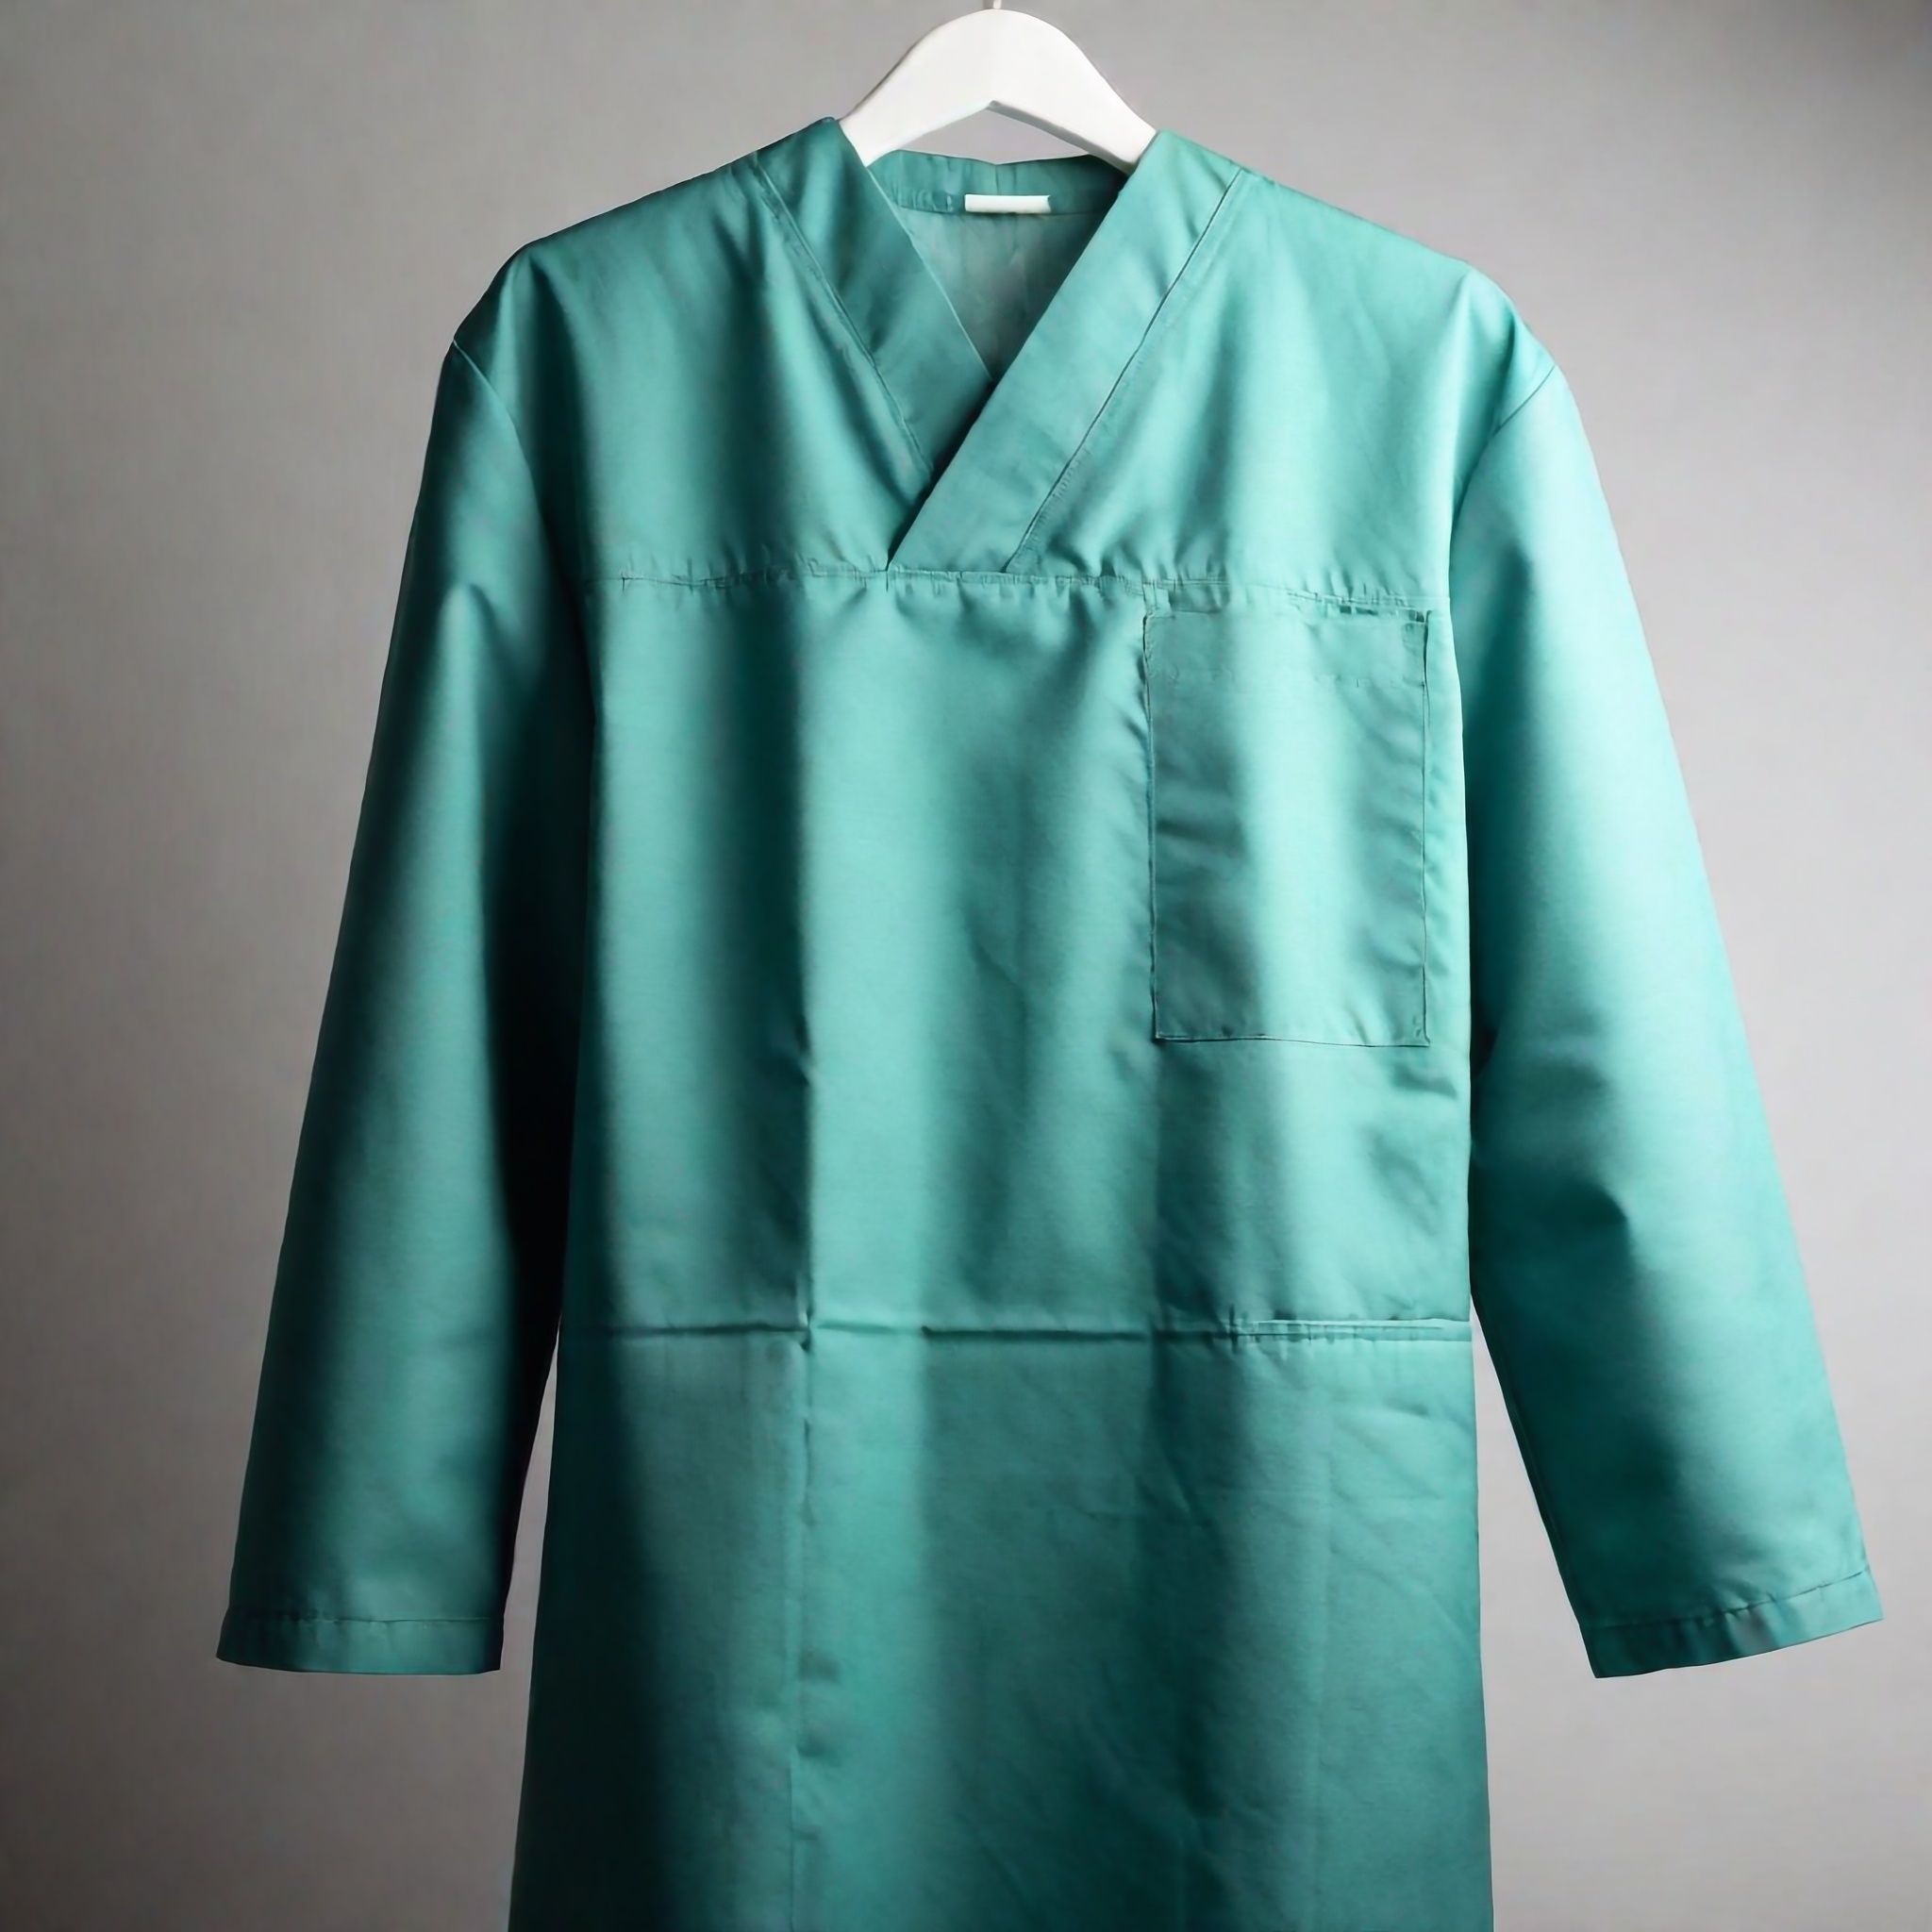 patient-gown